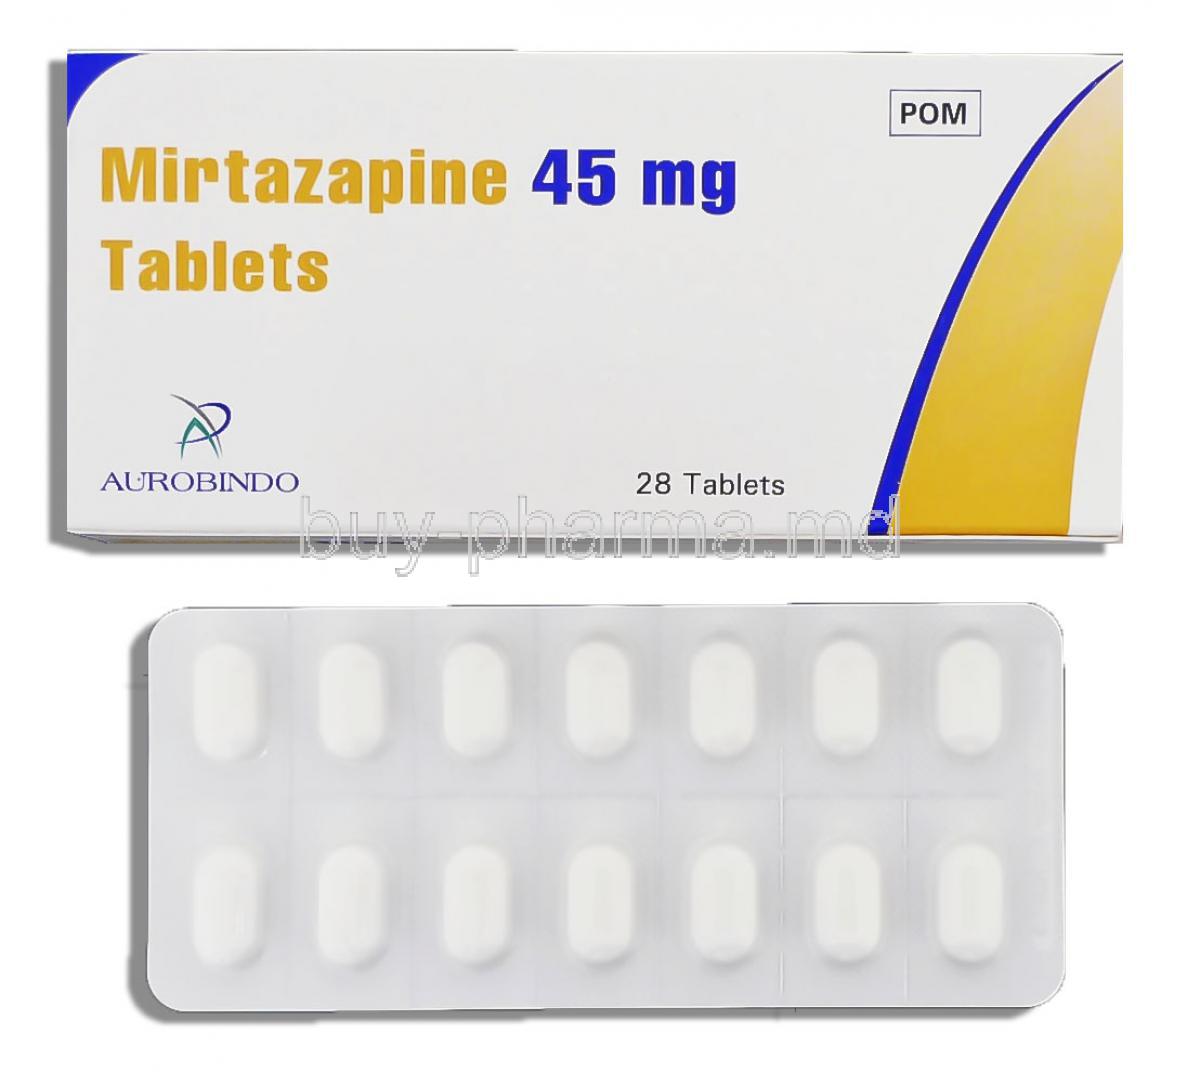 Mirtazapine 45 mg